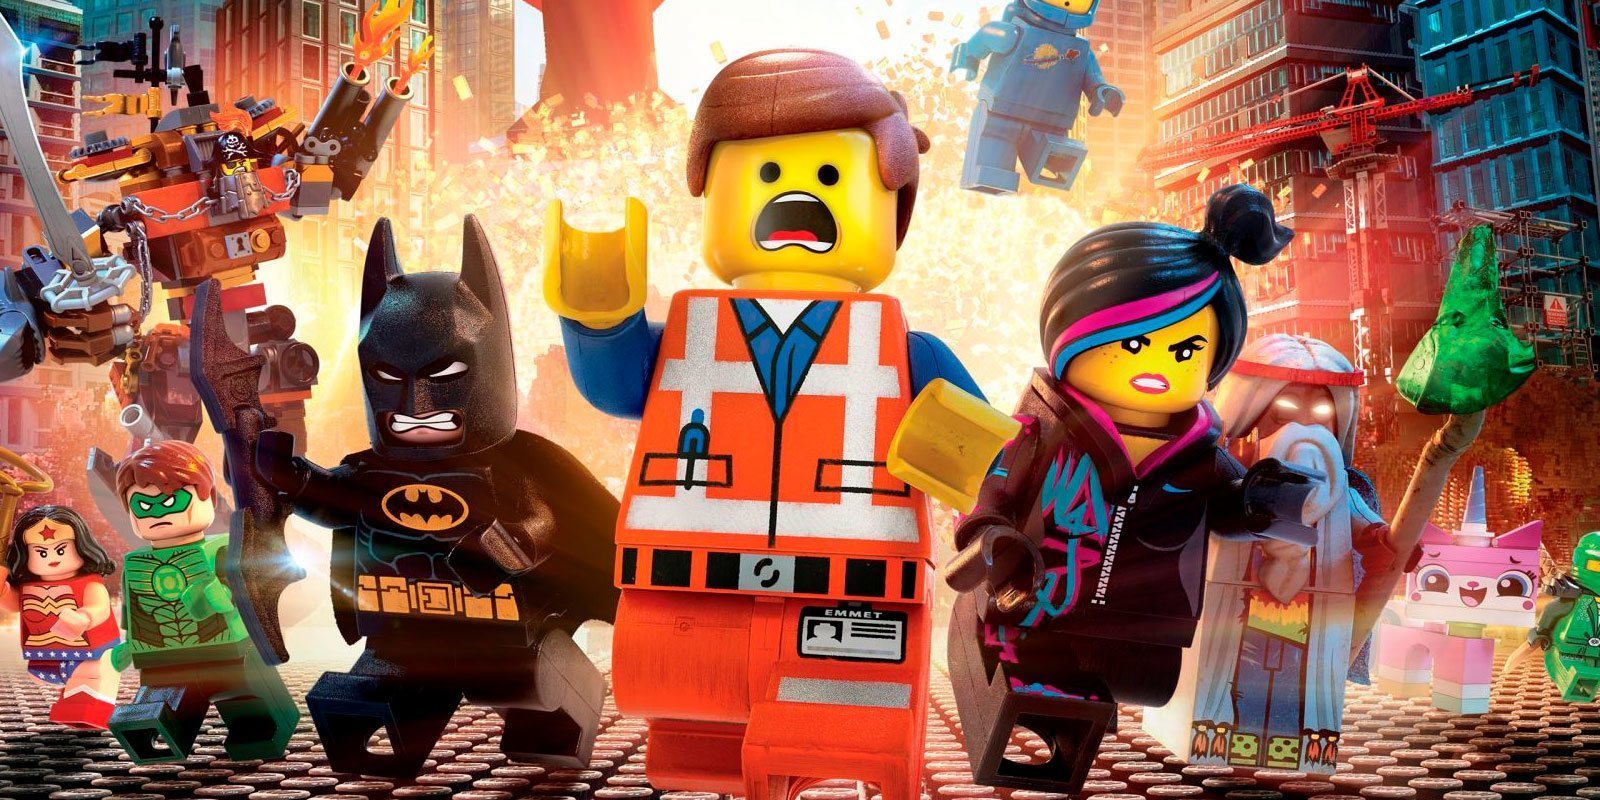 Este Black Friday podemos disfrutar de 'La LEGO Película' totalmente gratis